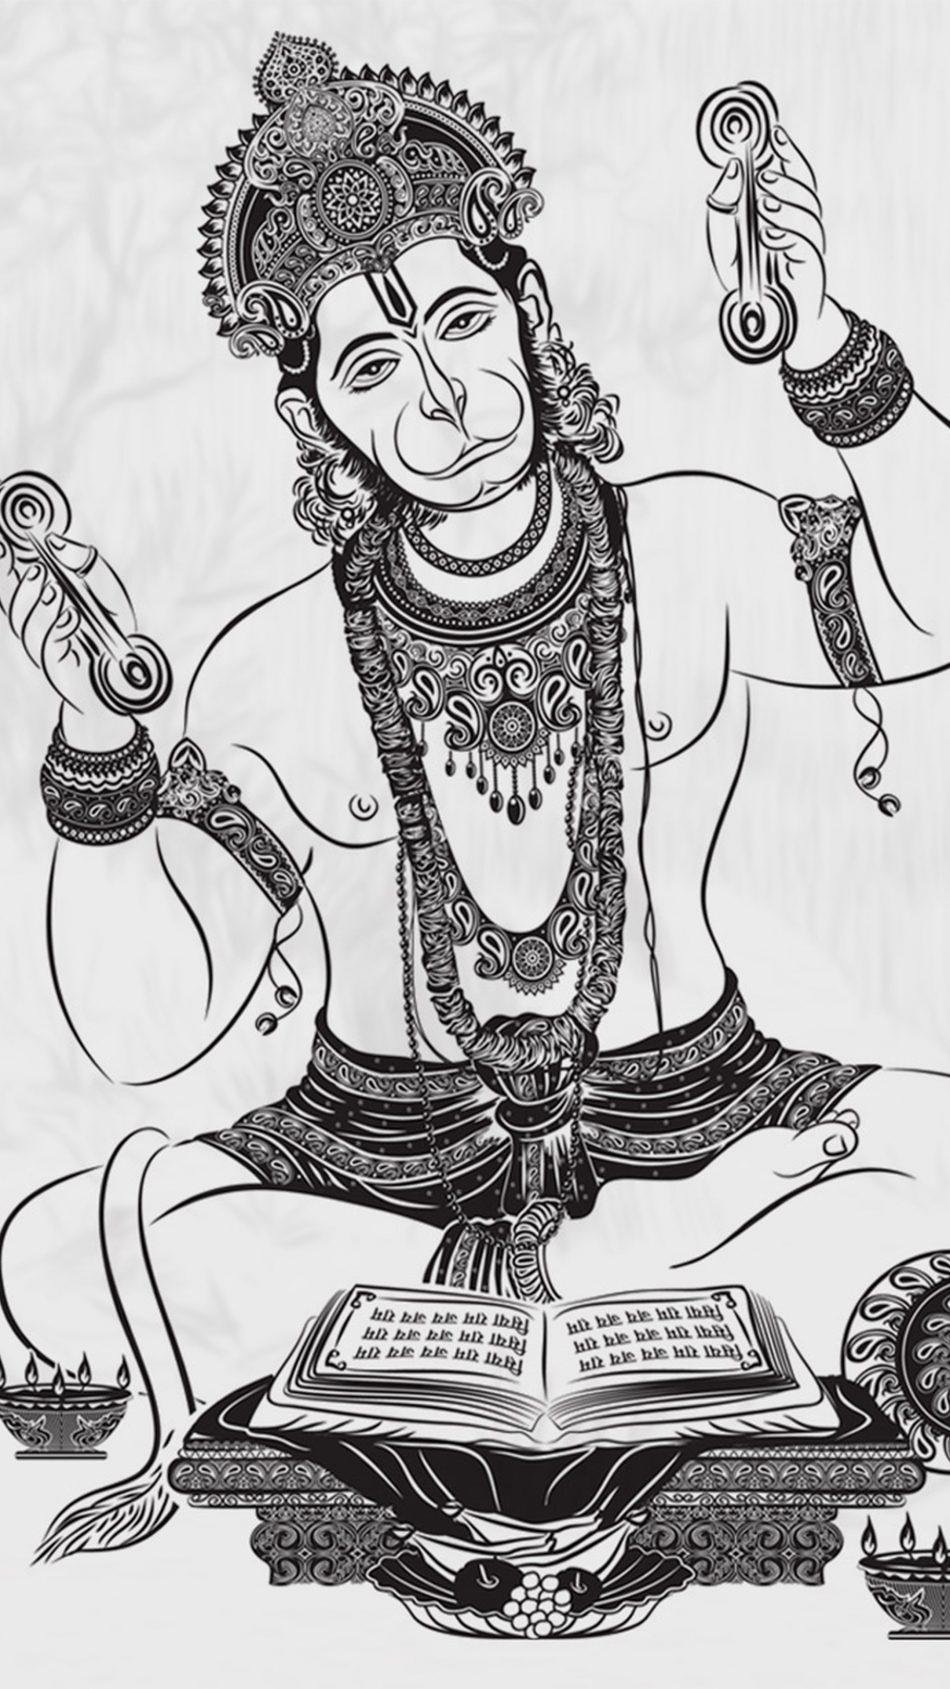 Buy Hanuman Ji Artwork at Lowest Price By SuhailArts-sonxechinhhang.vn